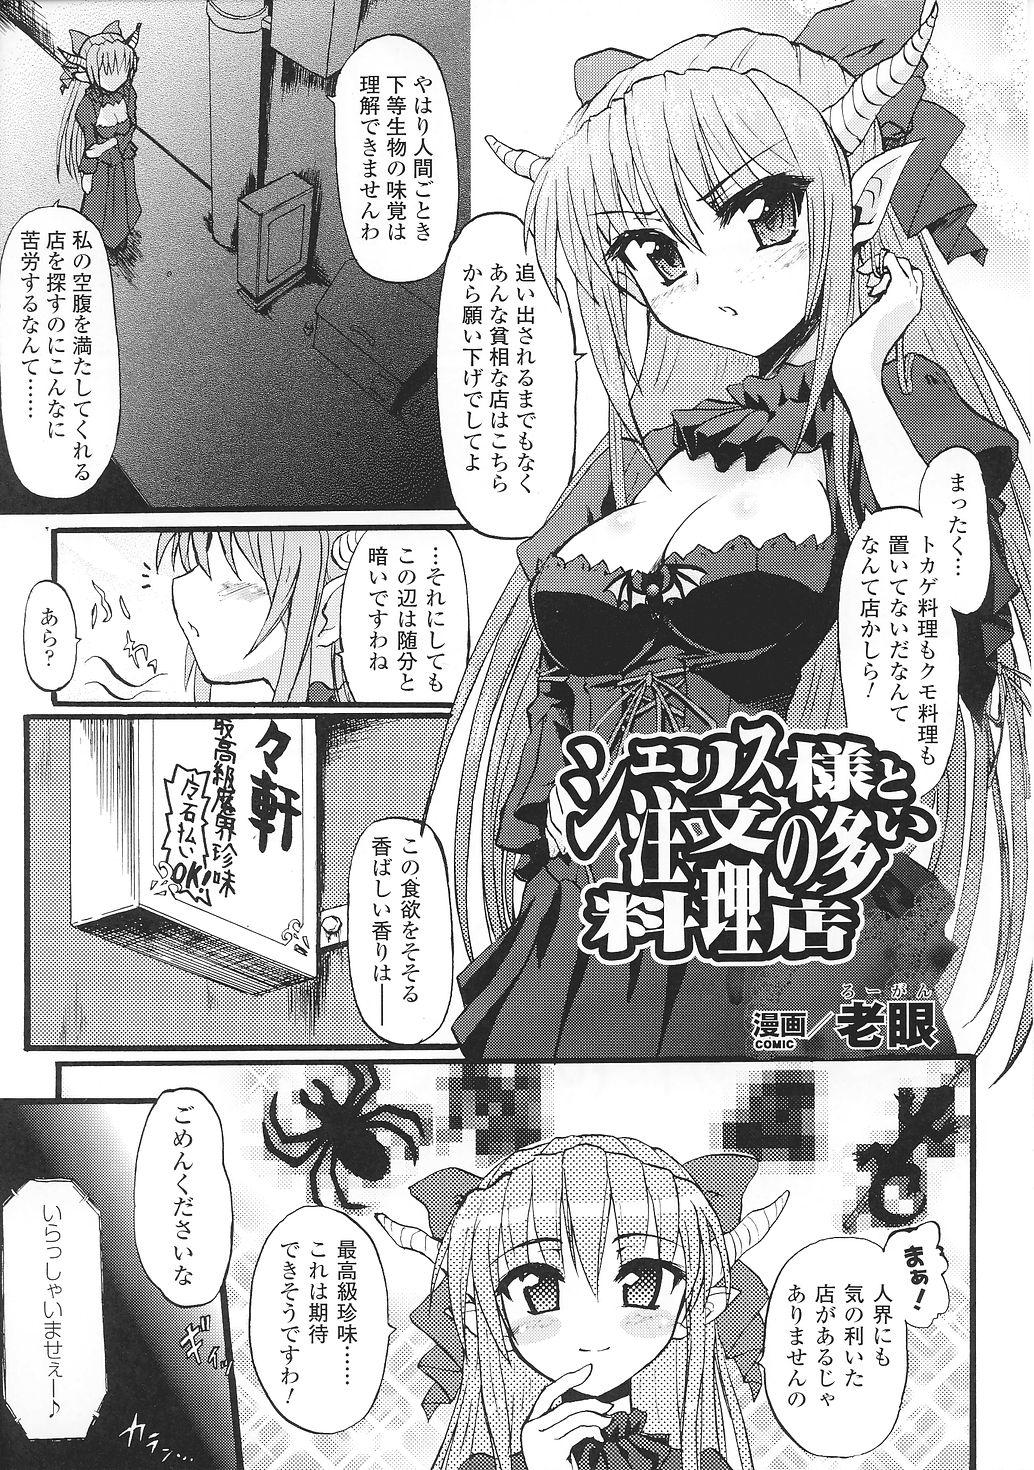 Sexo Ma ga Ochiru Yoru Anthology Comics 2 - Ma ga ochiru yoru Casero - Page 11